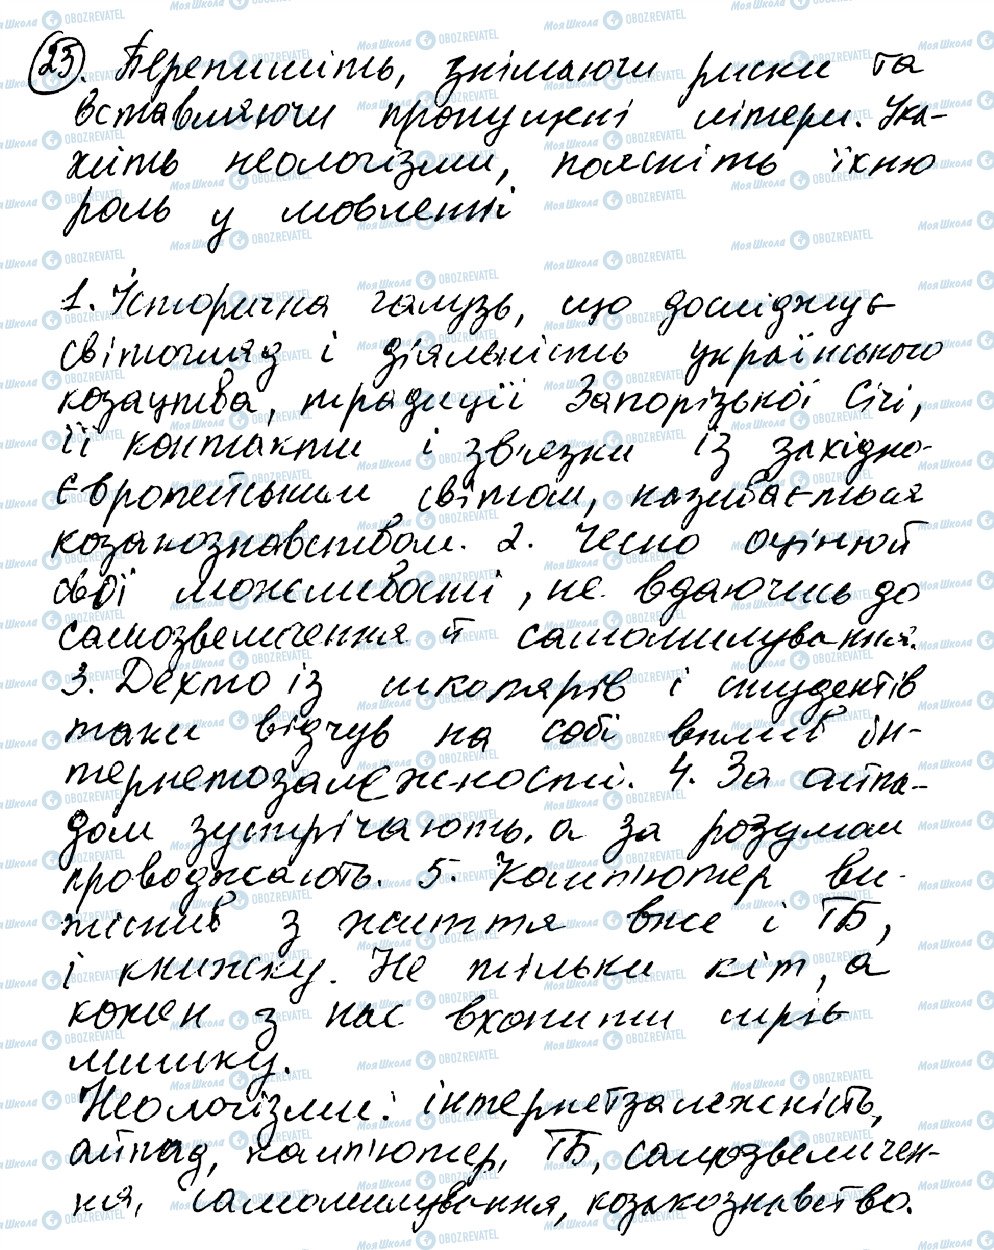 ГДЗ Українська мова 8 клас сторінка 25